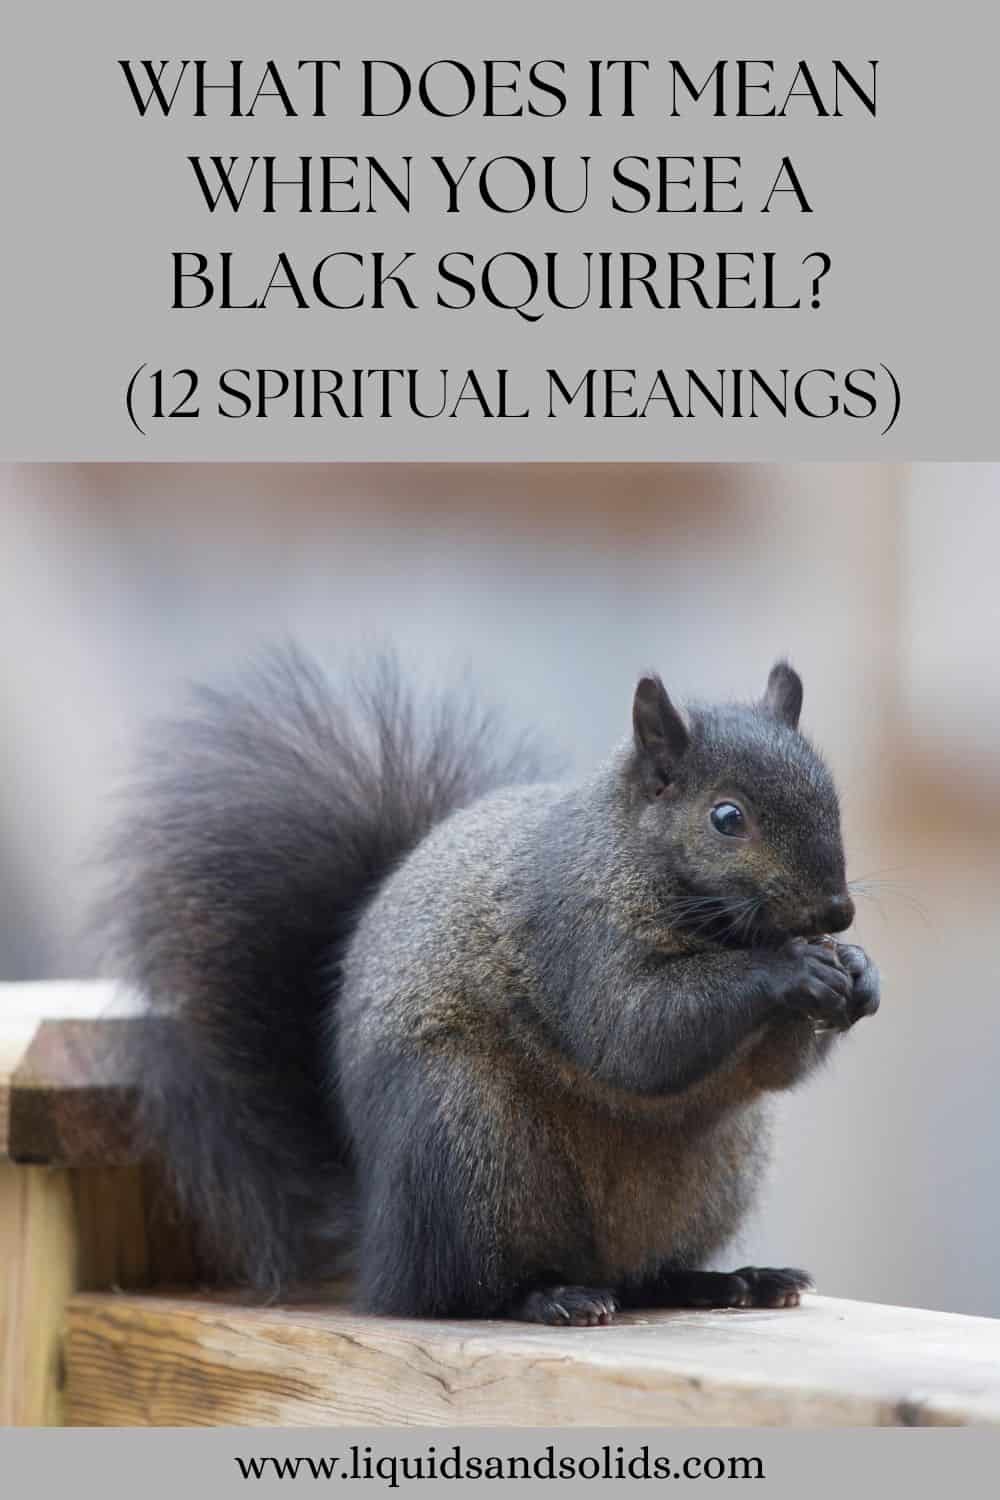  Hvad betyder det, når du ser et sort egern? (12 spirituelle betydninger)